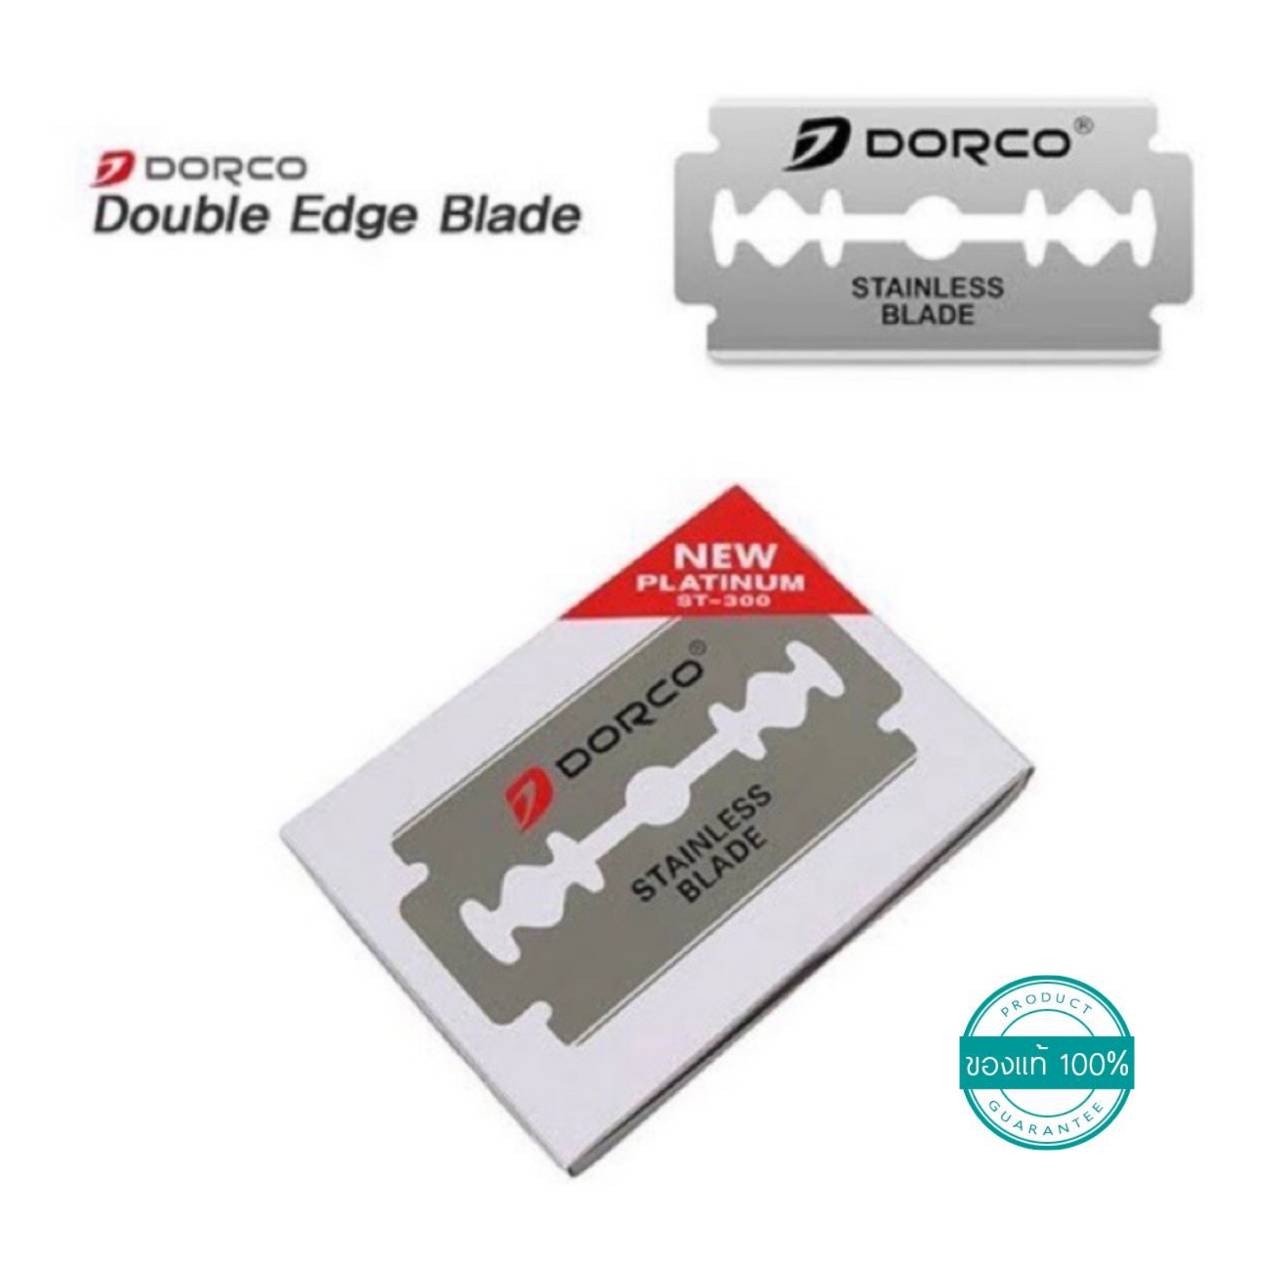 ภาพที่ให้รายละเอียดเกี่ยวกับ ใบมีดโกนหนวด ดอร์โก ดองโก้ ขนาดบรรจุ 1 กล่อง 100 ใบ/DORCO 20 Packets 5 Blades